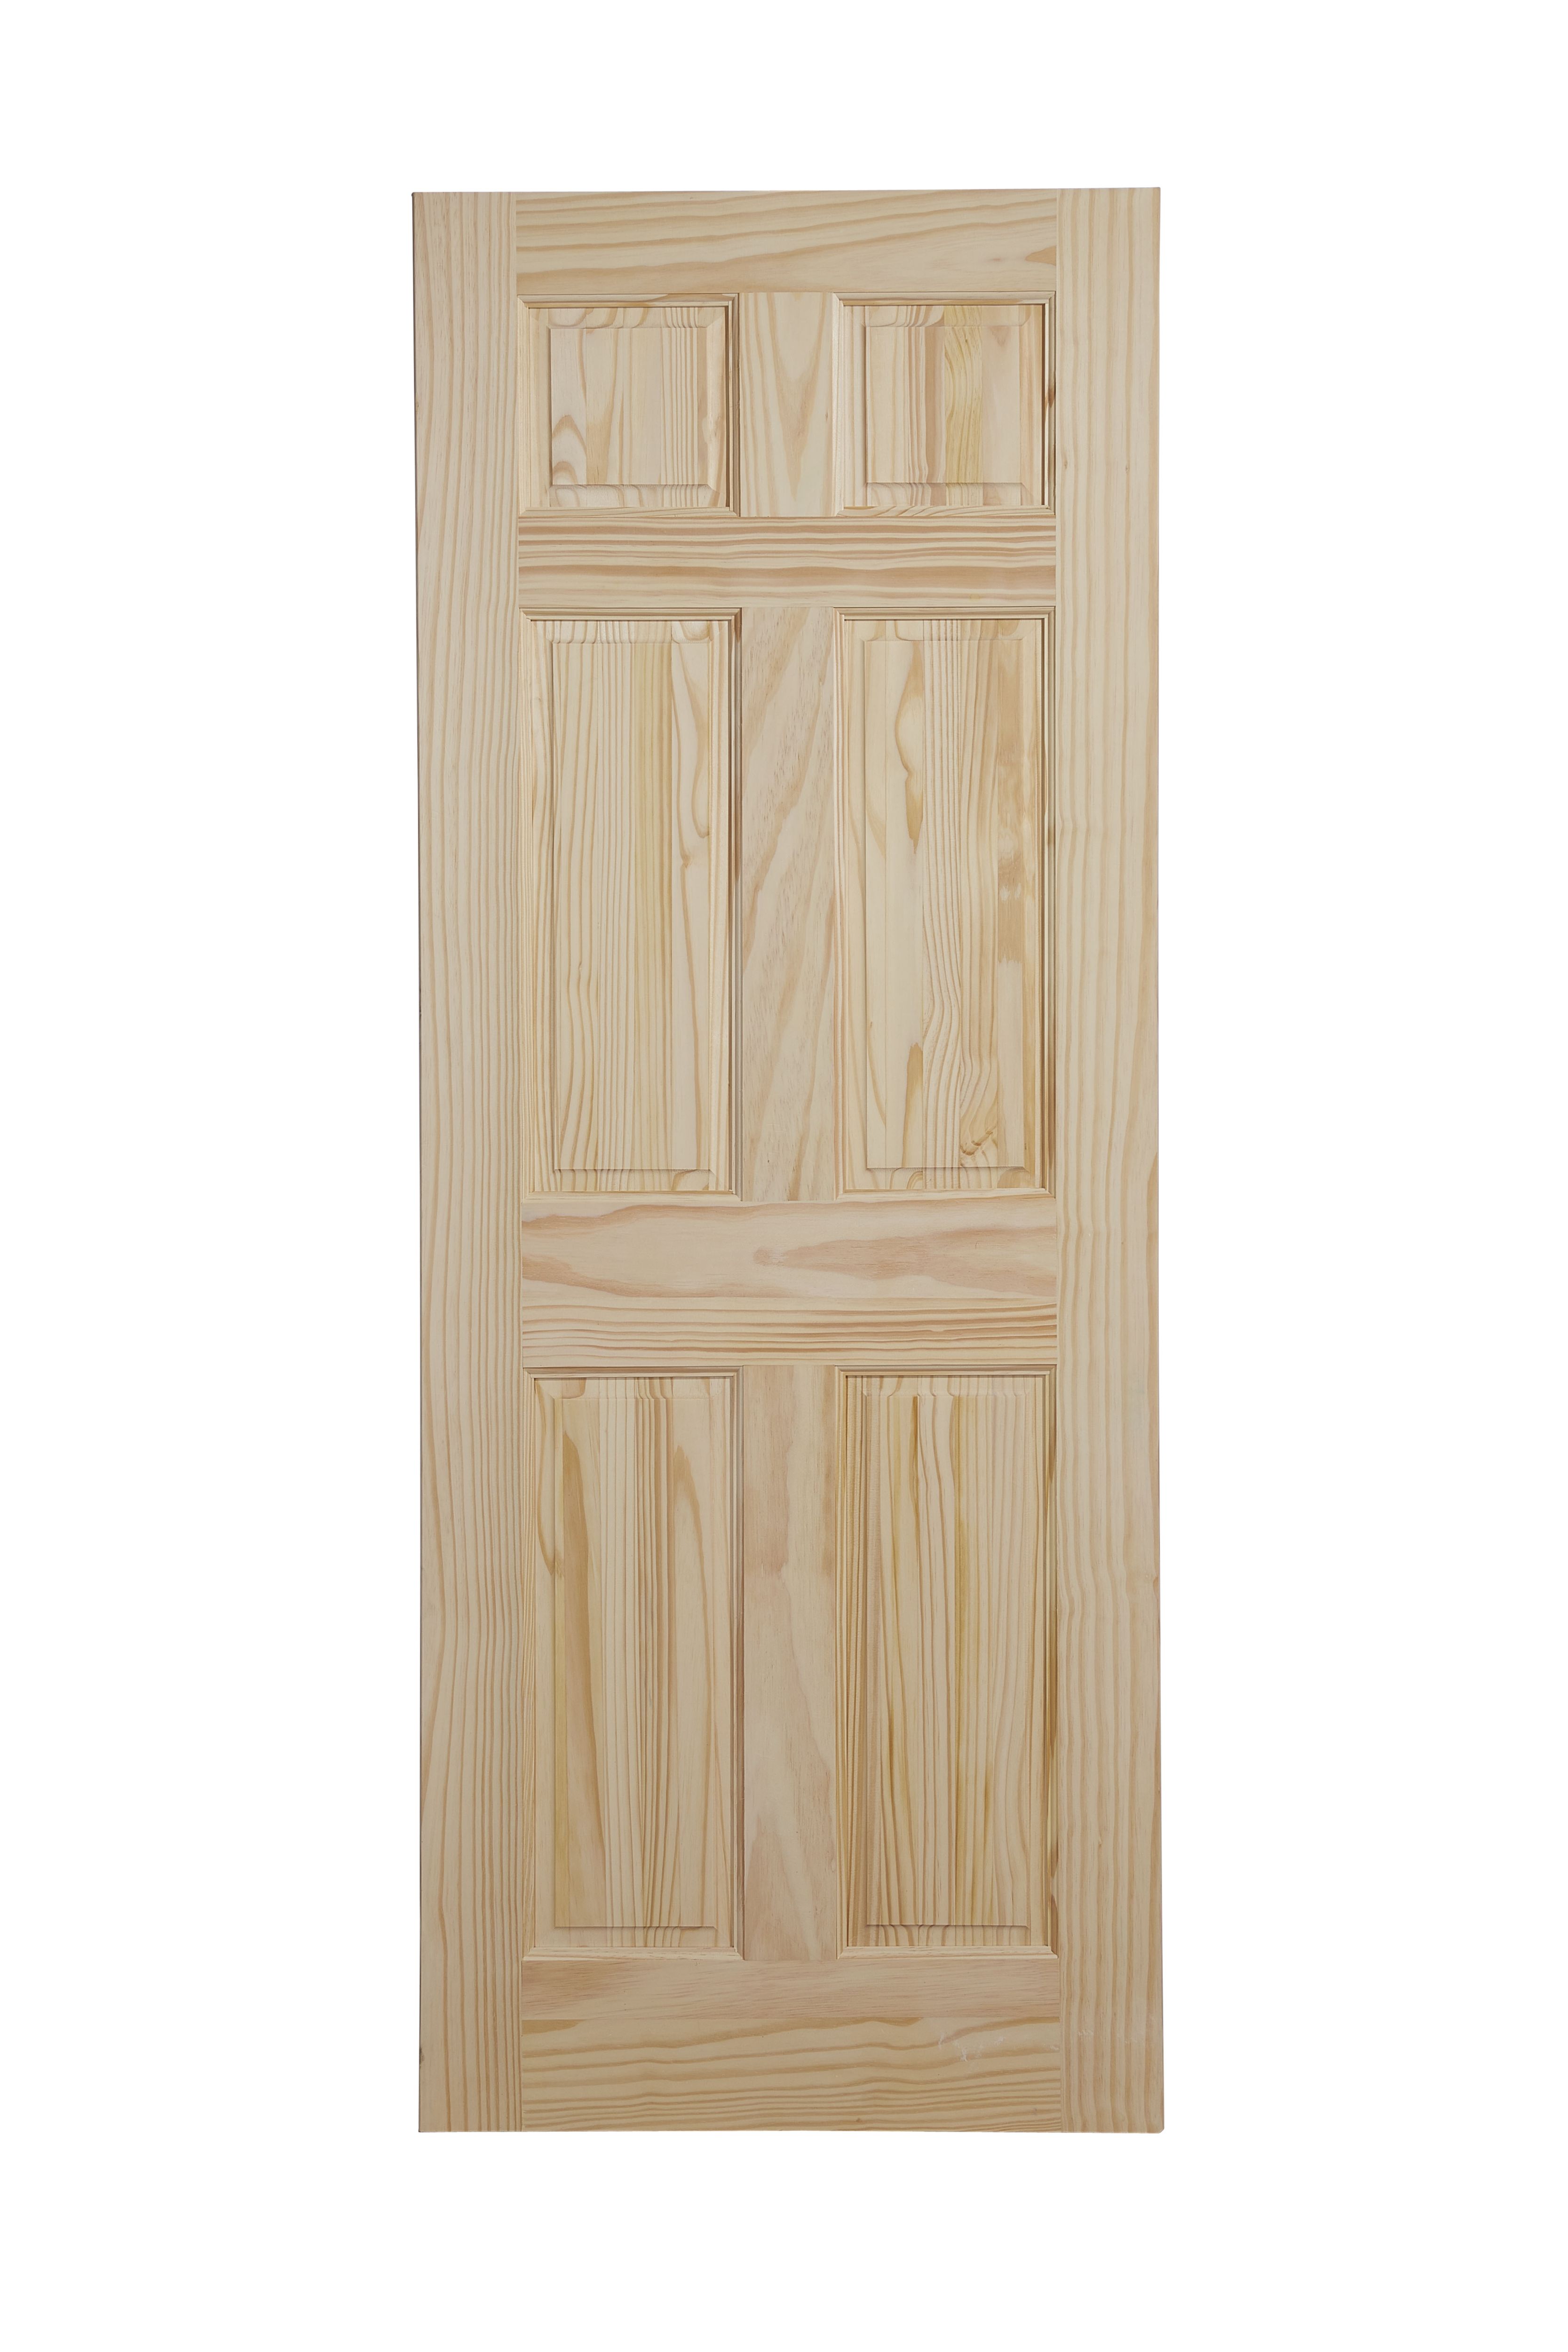 6 panel Unglazed Victorian Pine veneer Internal Clear pine Door, (H)2032mm (W)813mm (T)35mm